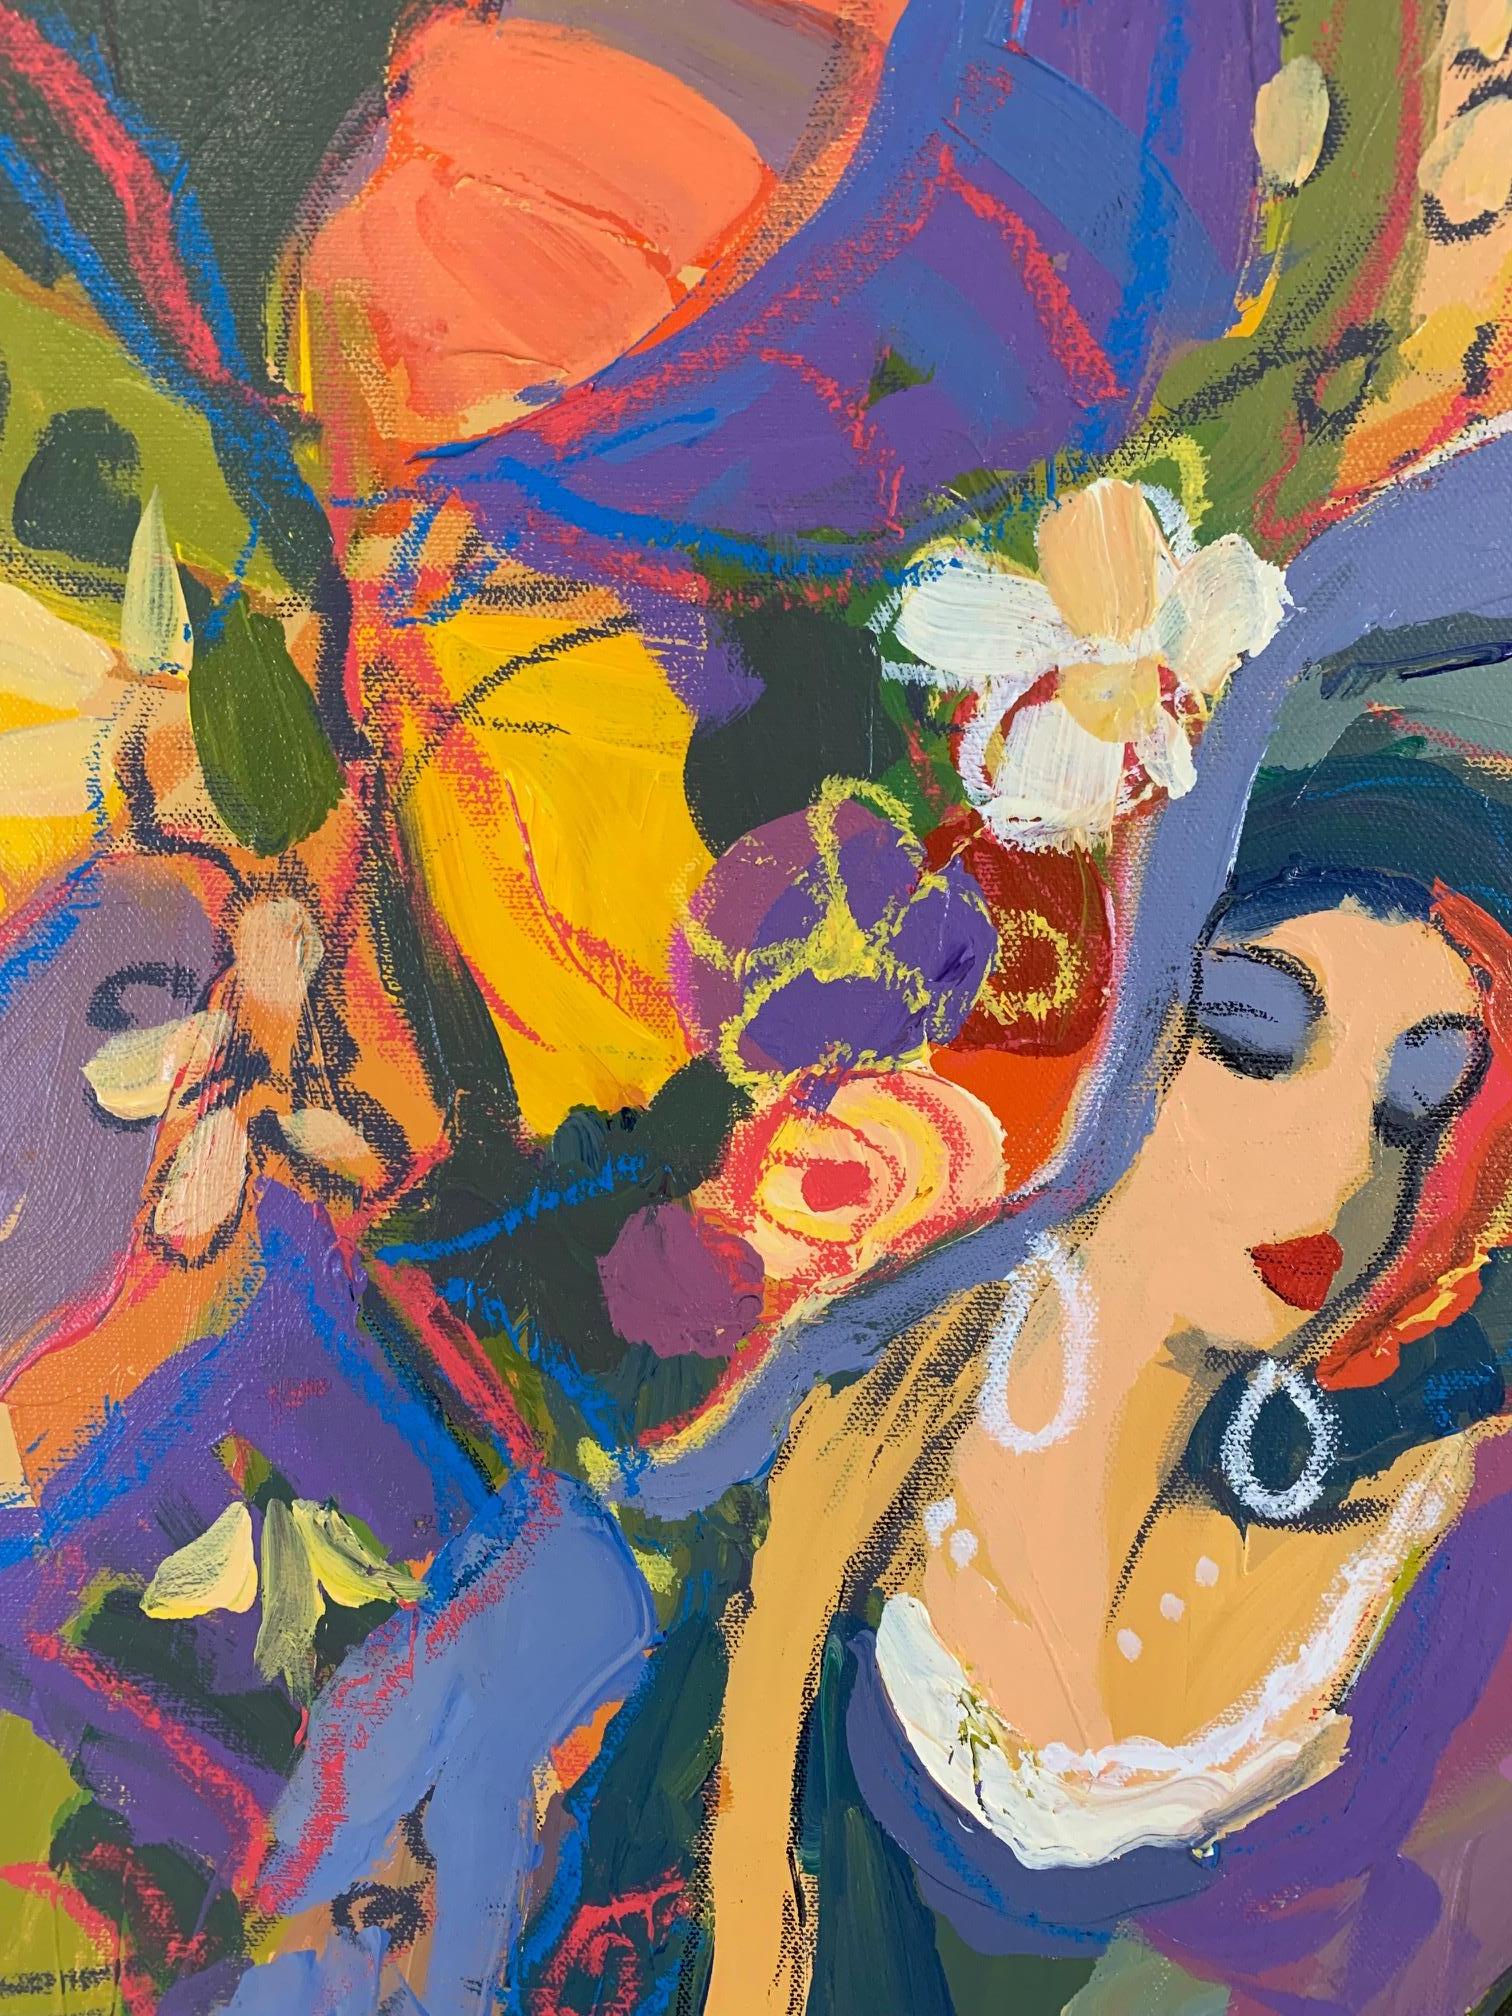 Magnifique acrylique sur toile d'Isaac Maimon représentant deux dames à la mode, jambes croisées, assises dans un café avec des parapluies. 

Les dames parisiennes, les scènes de café et les couleurs éclatantes de Maimon font de lui un artiste